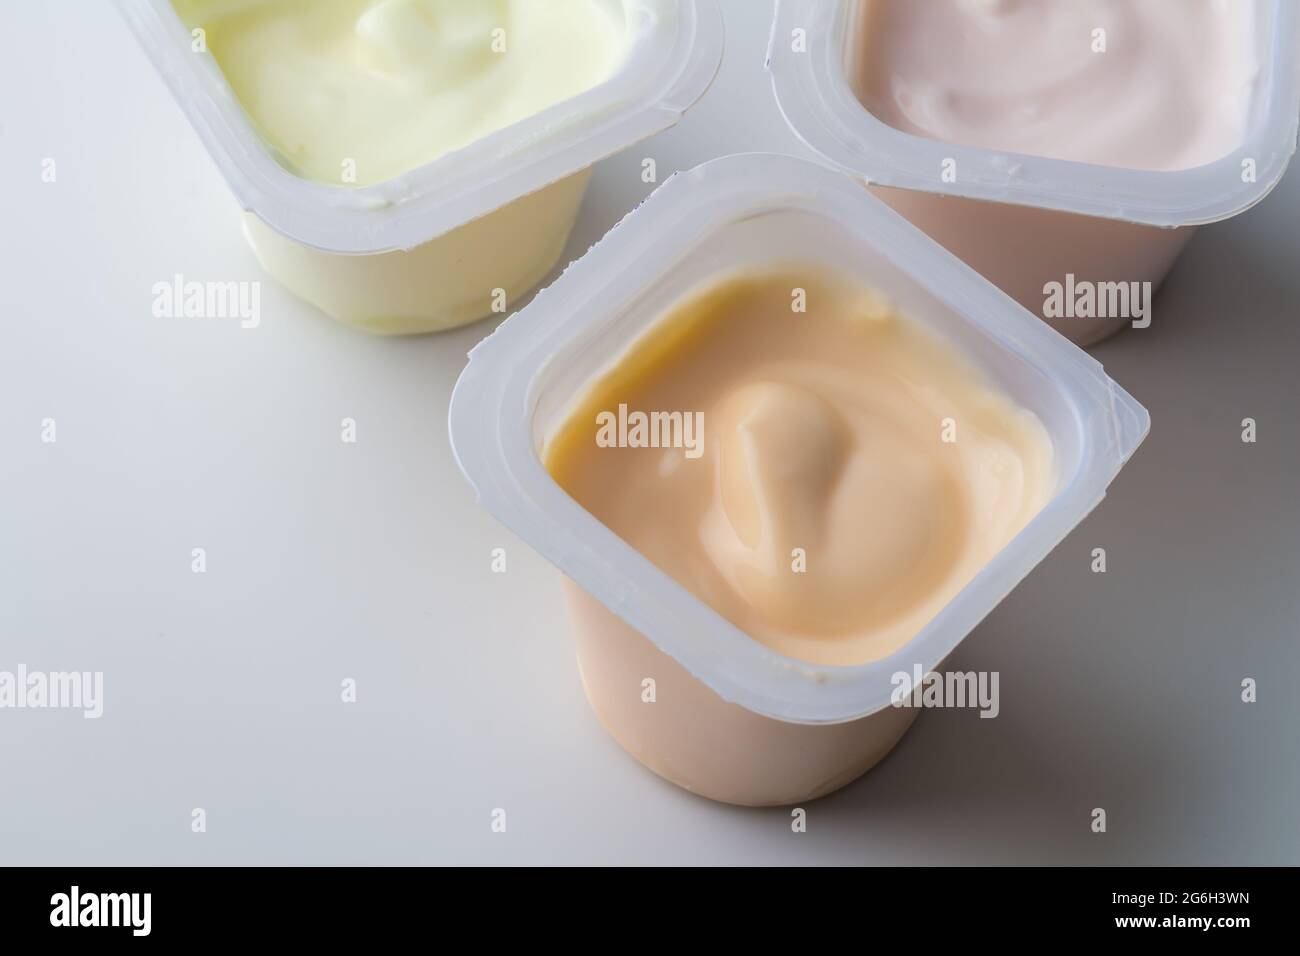 Aromatisierter Joghurt in Kunststofftöpfen - bunte Joghurtbecher mit Fruchtgeschmack auf Weiß isoliert mit Kopierfläche - Foto von oben Stockfoto